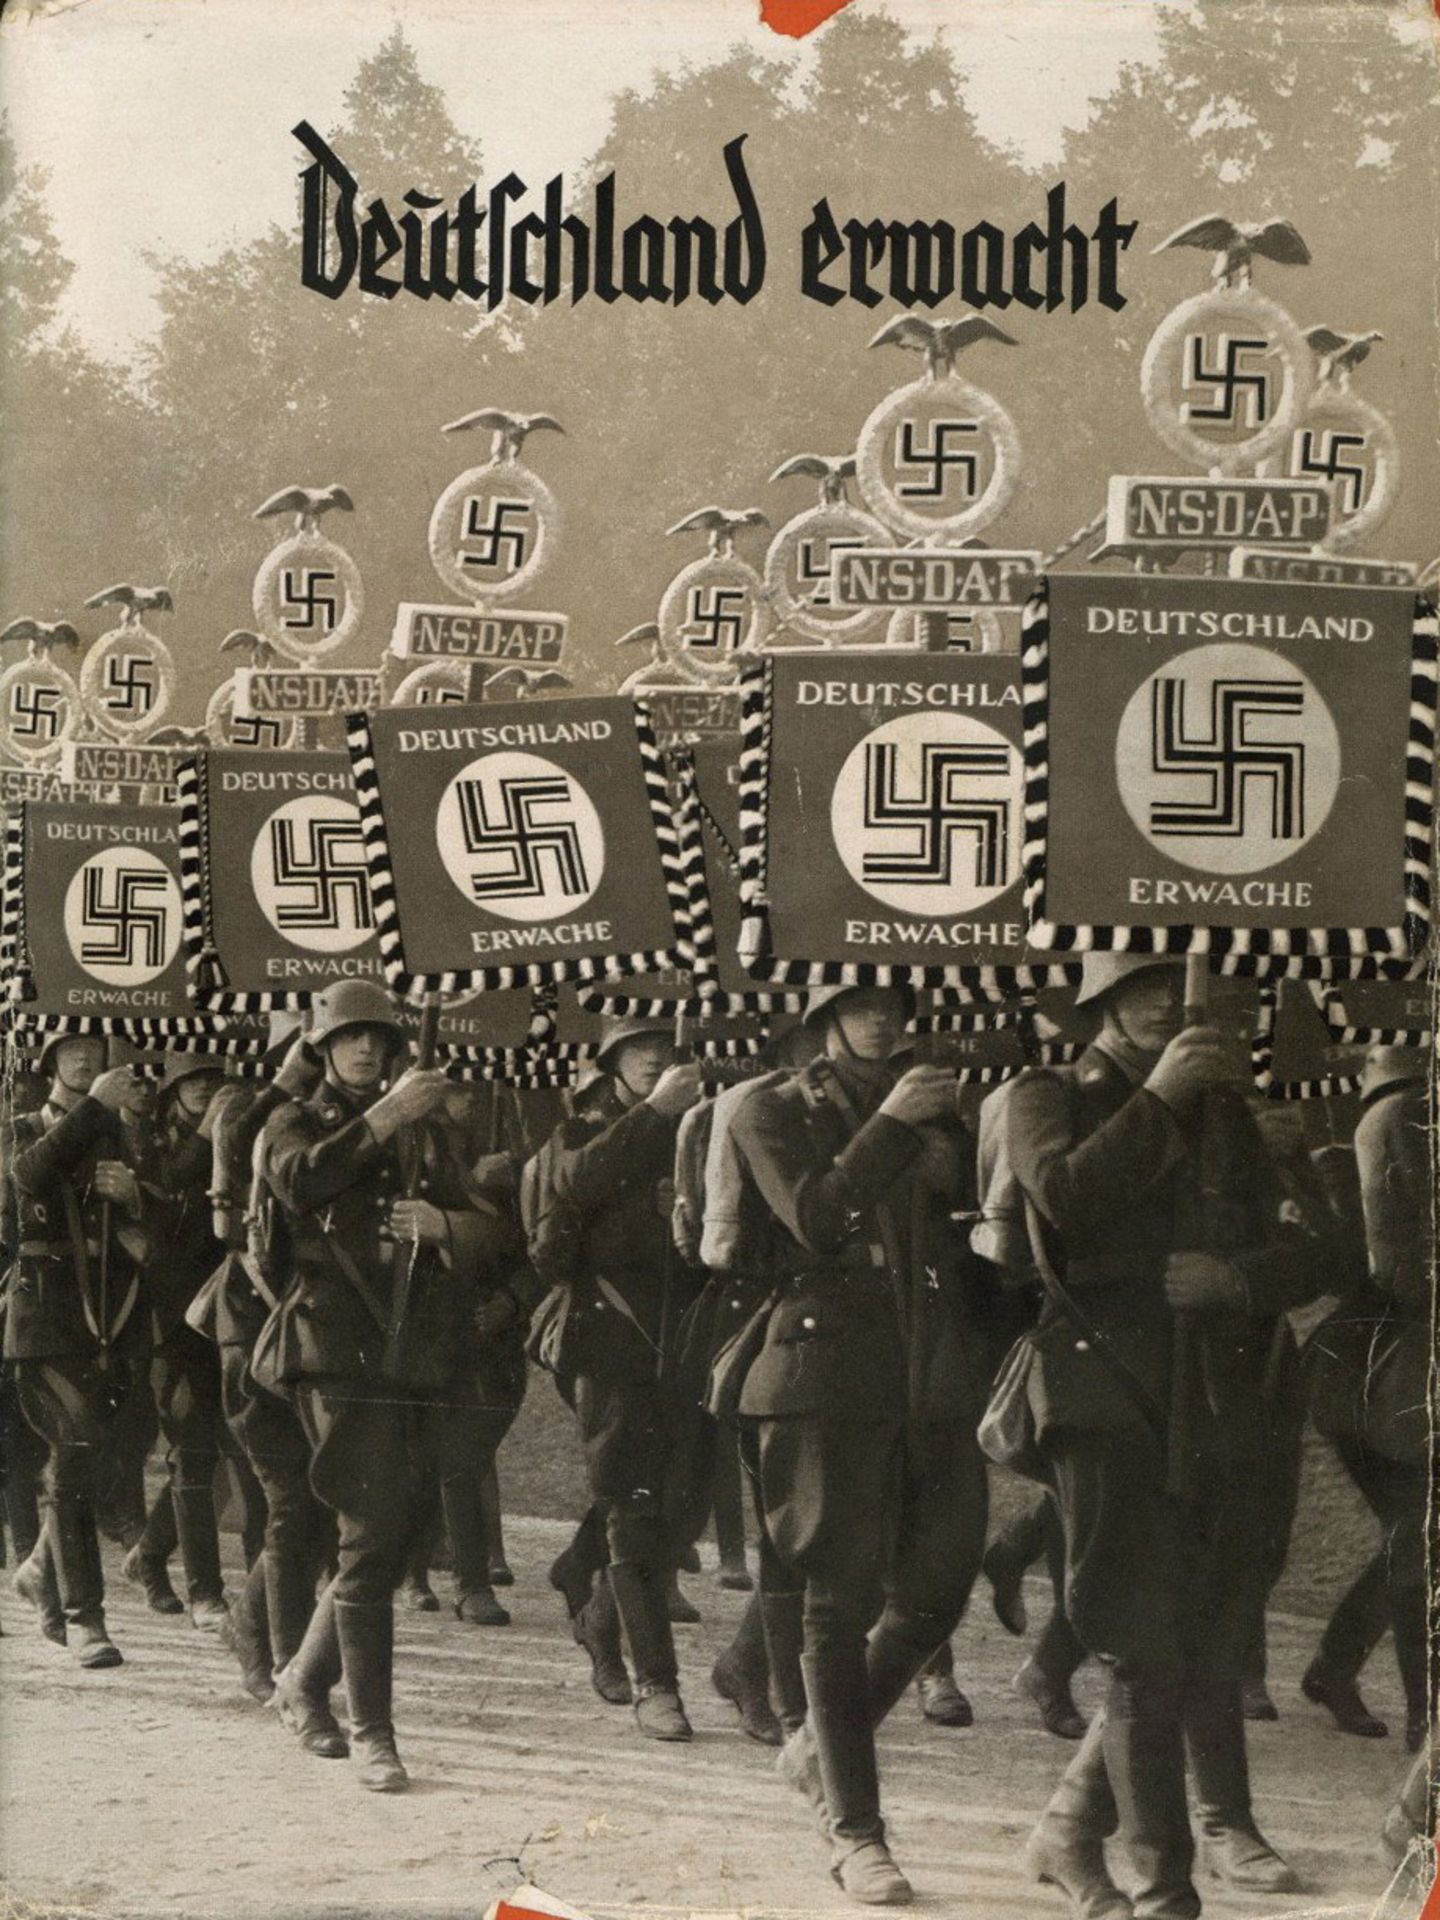 Sammelbild-Album Deutschland erwacht Werden, Kampf und Sieg der NSDAP, Hrsg. Cigaretten-Bilderdienst